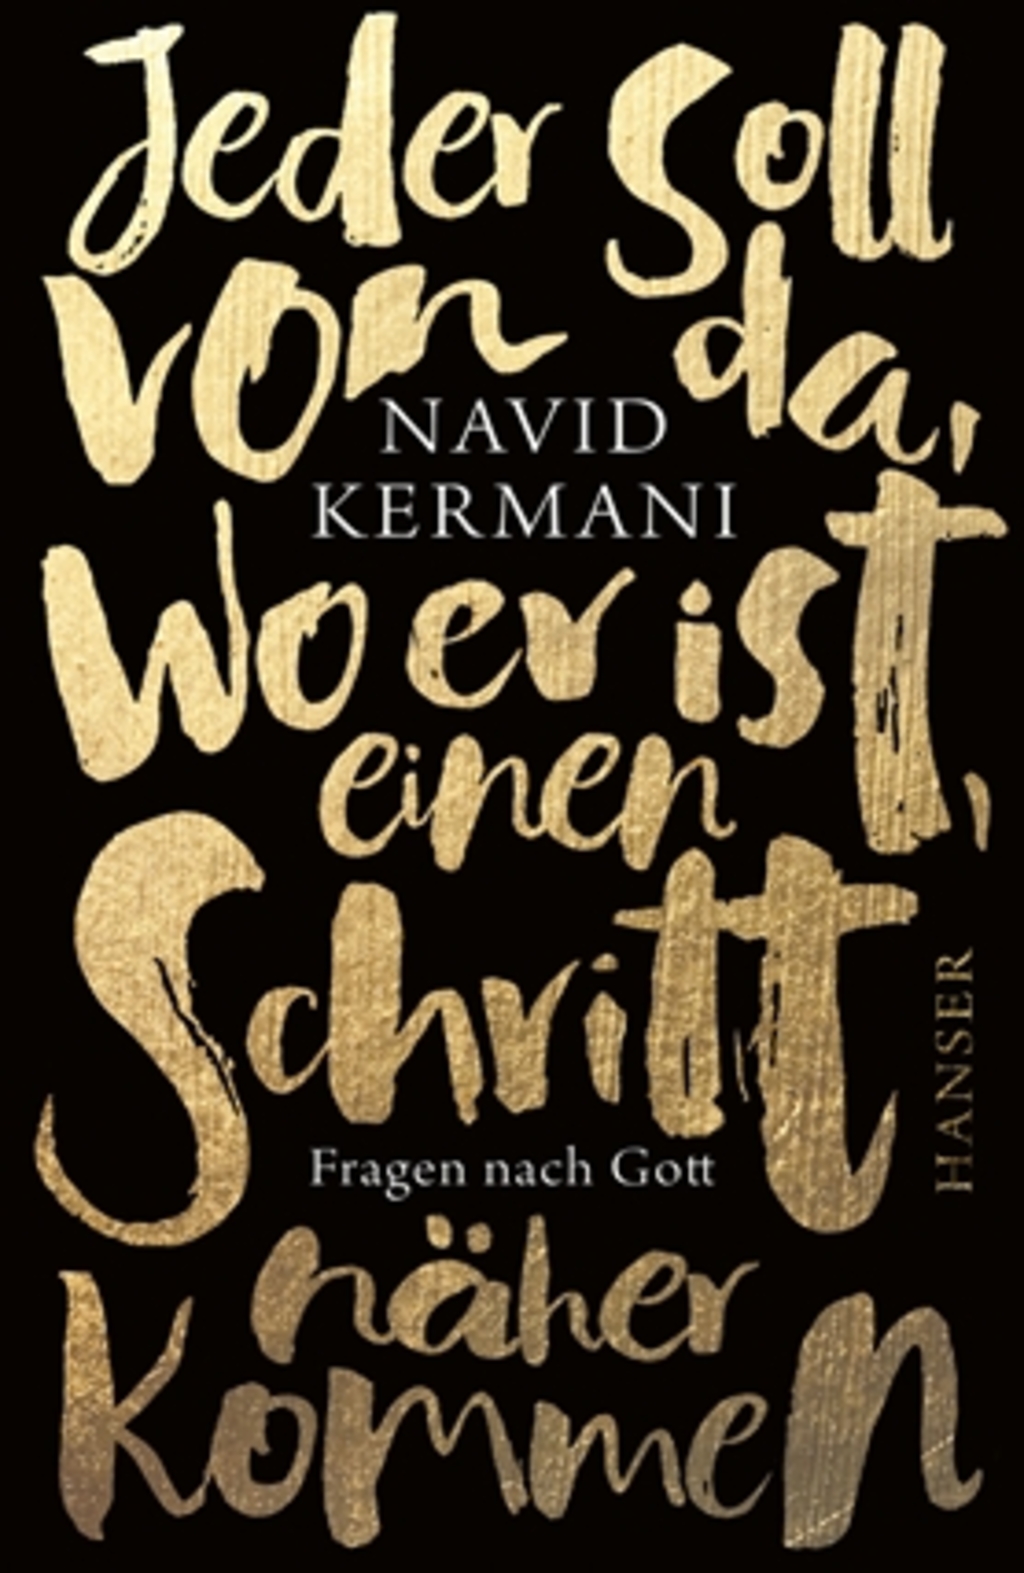 Cover von Navid Kermanis "Jeder soll von da, wo er ist, einen Schritt näher kommen. Fragen nach Gott." Hanser Verlag; Quelle: Verlag. 